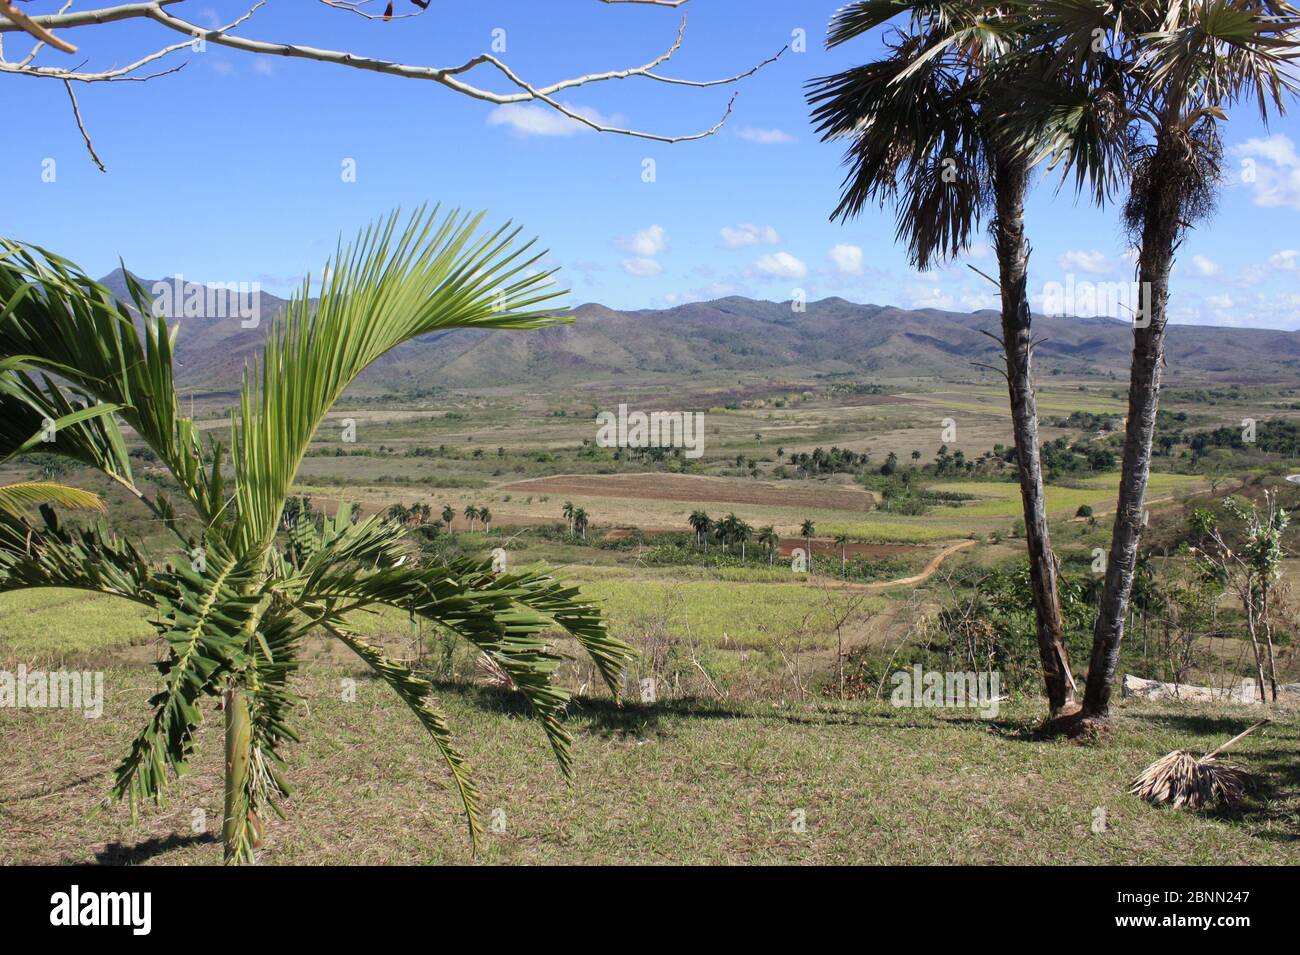 Blick auf das Valle de los Ingenios (Tal der Zuckermühlen) von der Manaca Iznaga Plantage in der Nähe von Trinidad, Kuba. Stockfoto